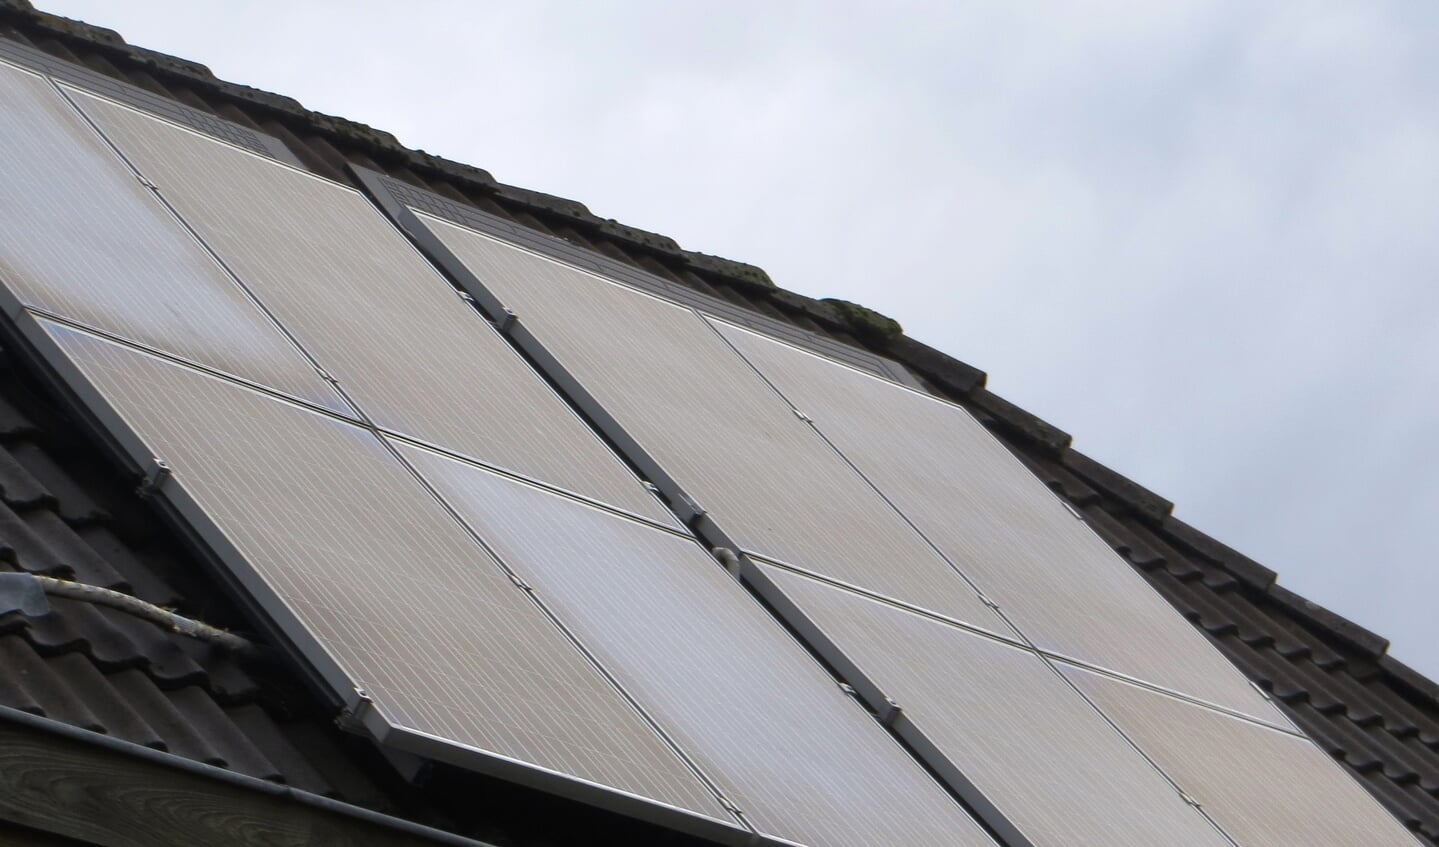 Er moet eerst gekeken worden naar de mogelijkheid van zonnepanelen op daken. Foto: Bernhard Harfsterkamp